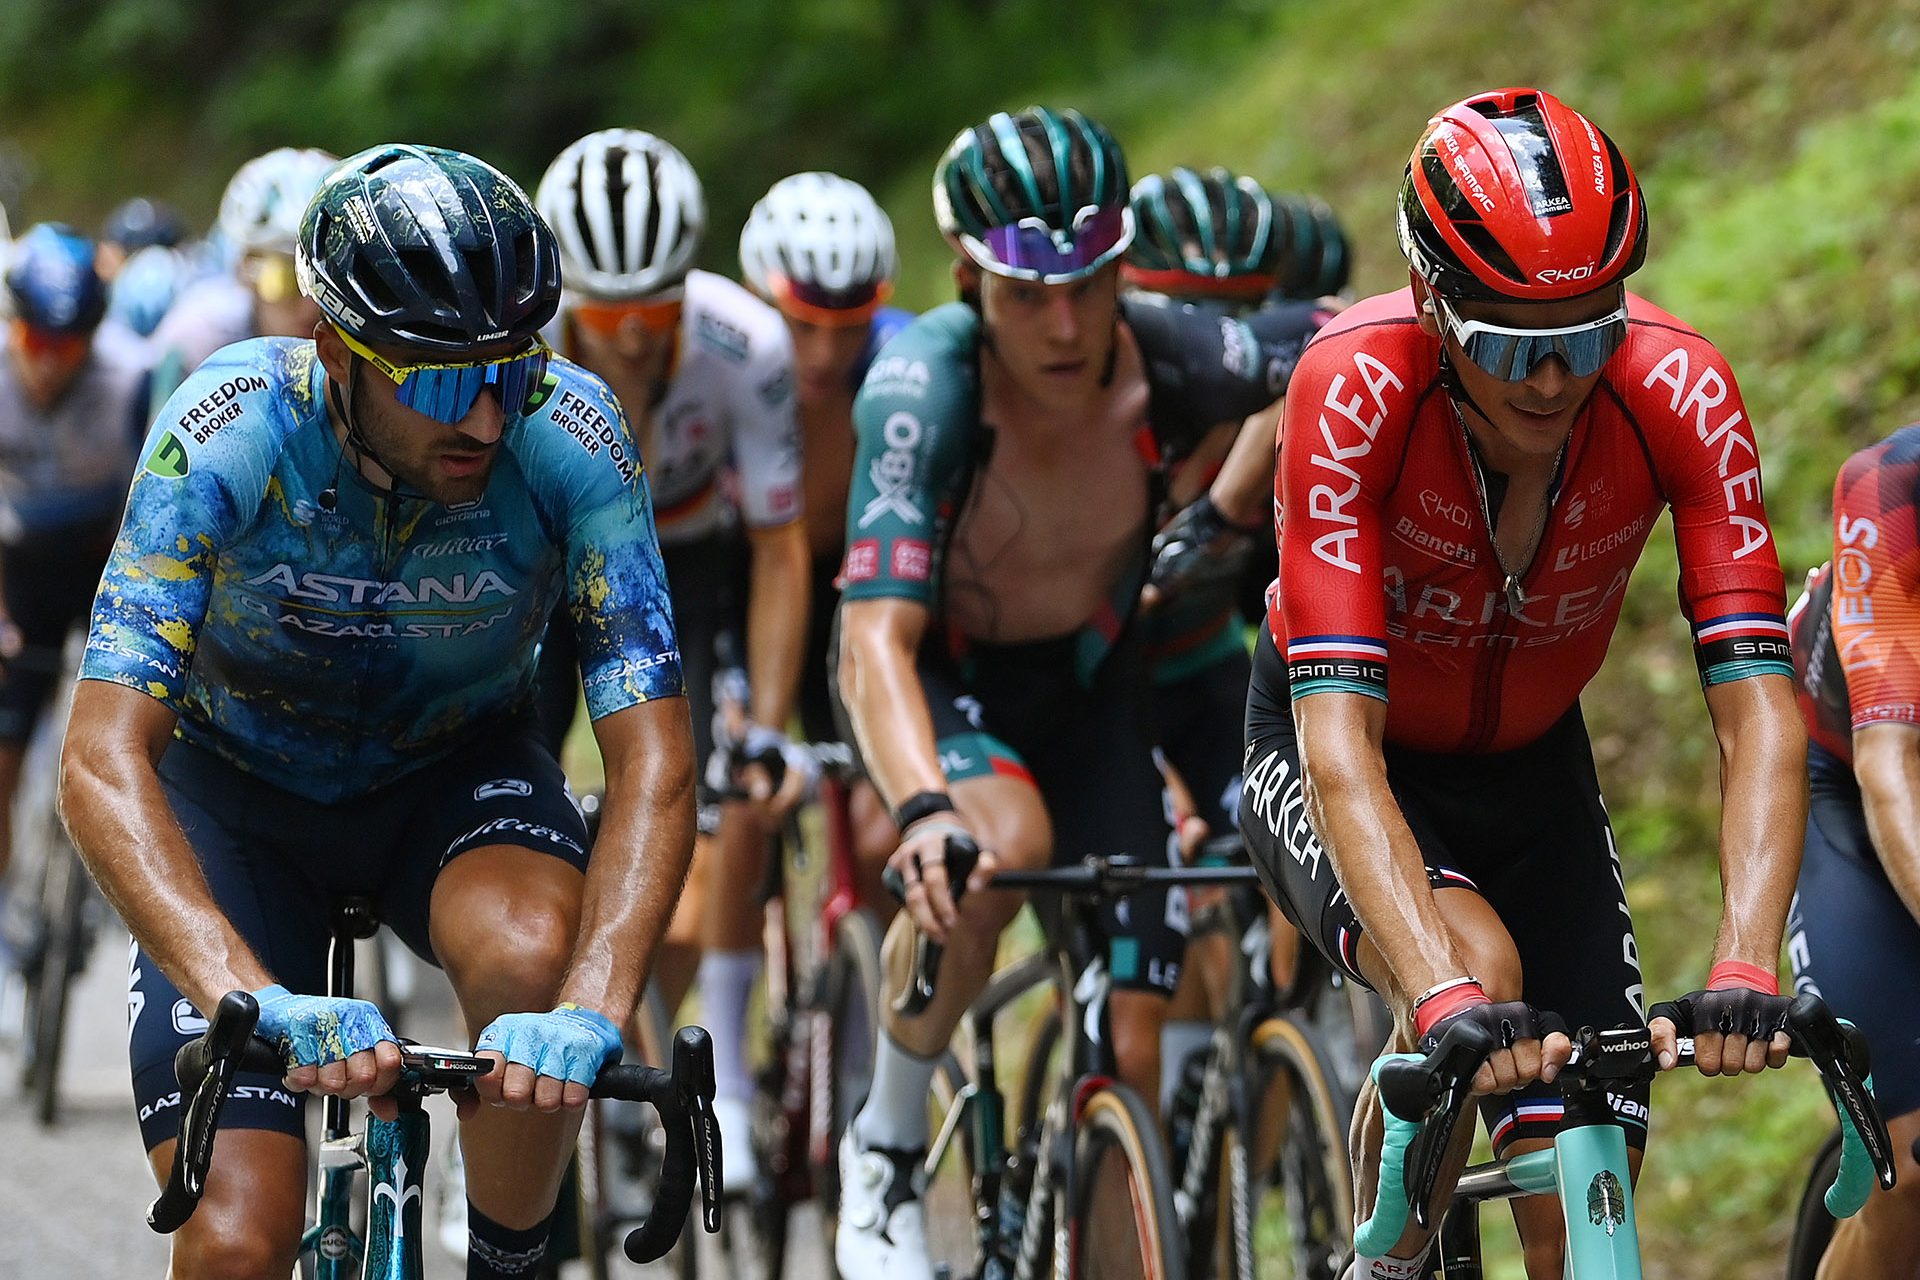 Ciclismo: decepções do Tour de France